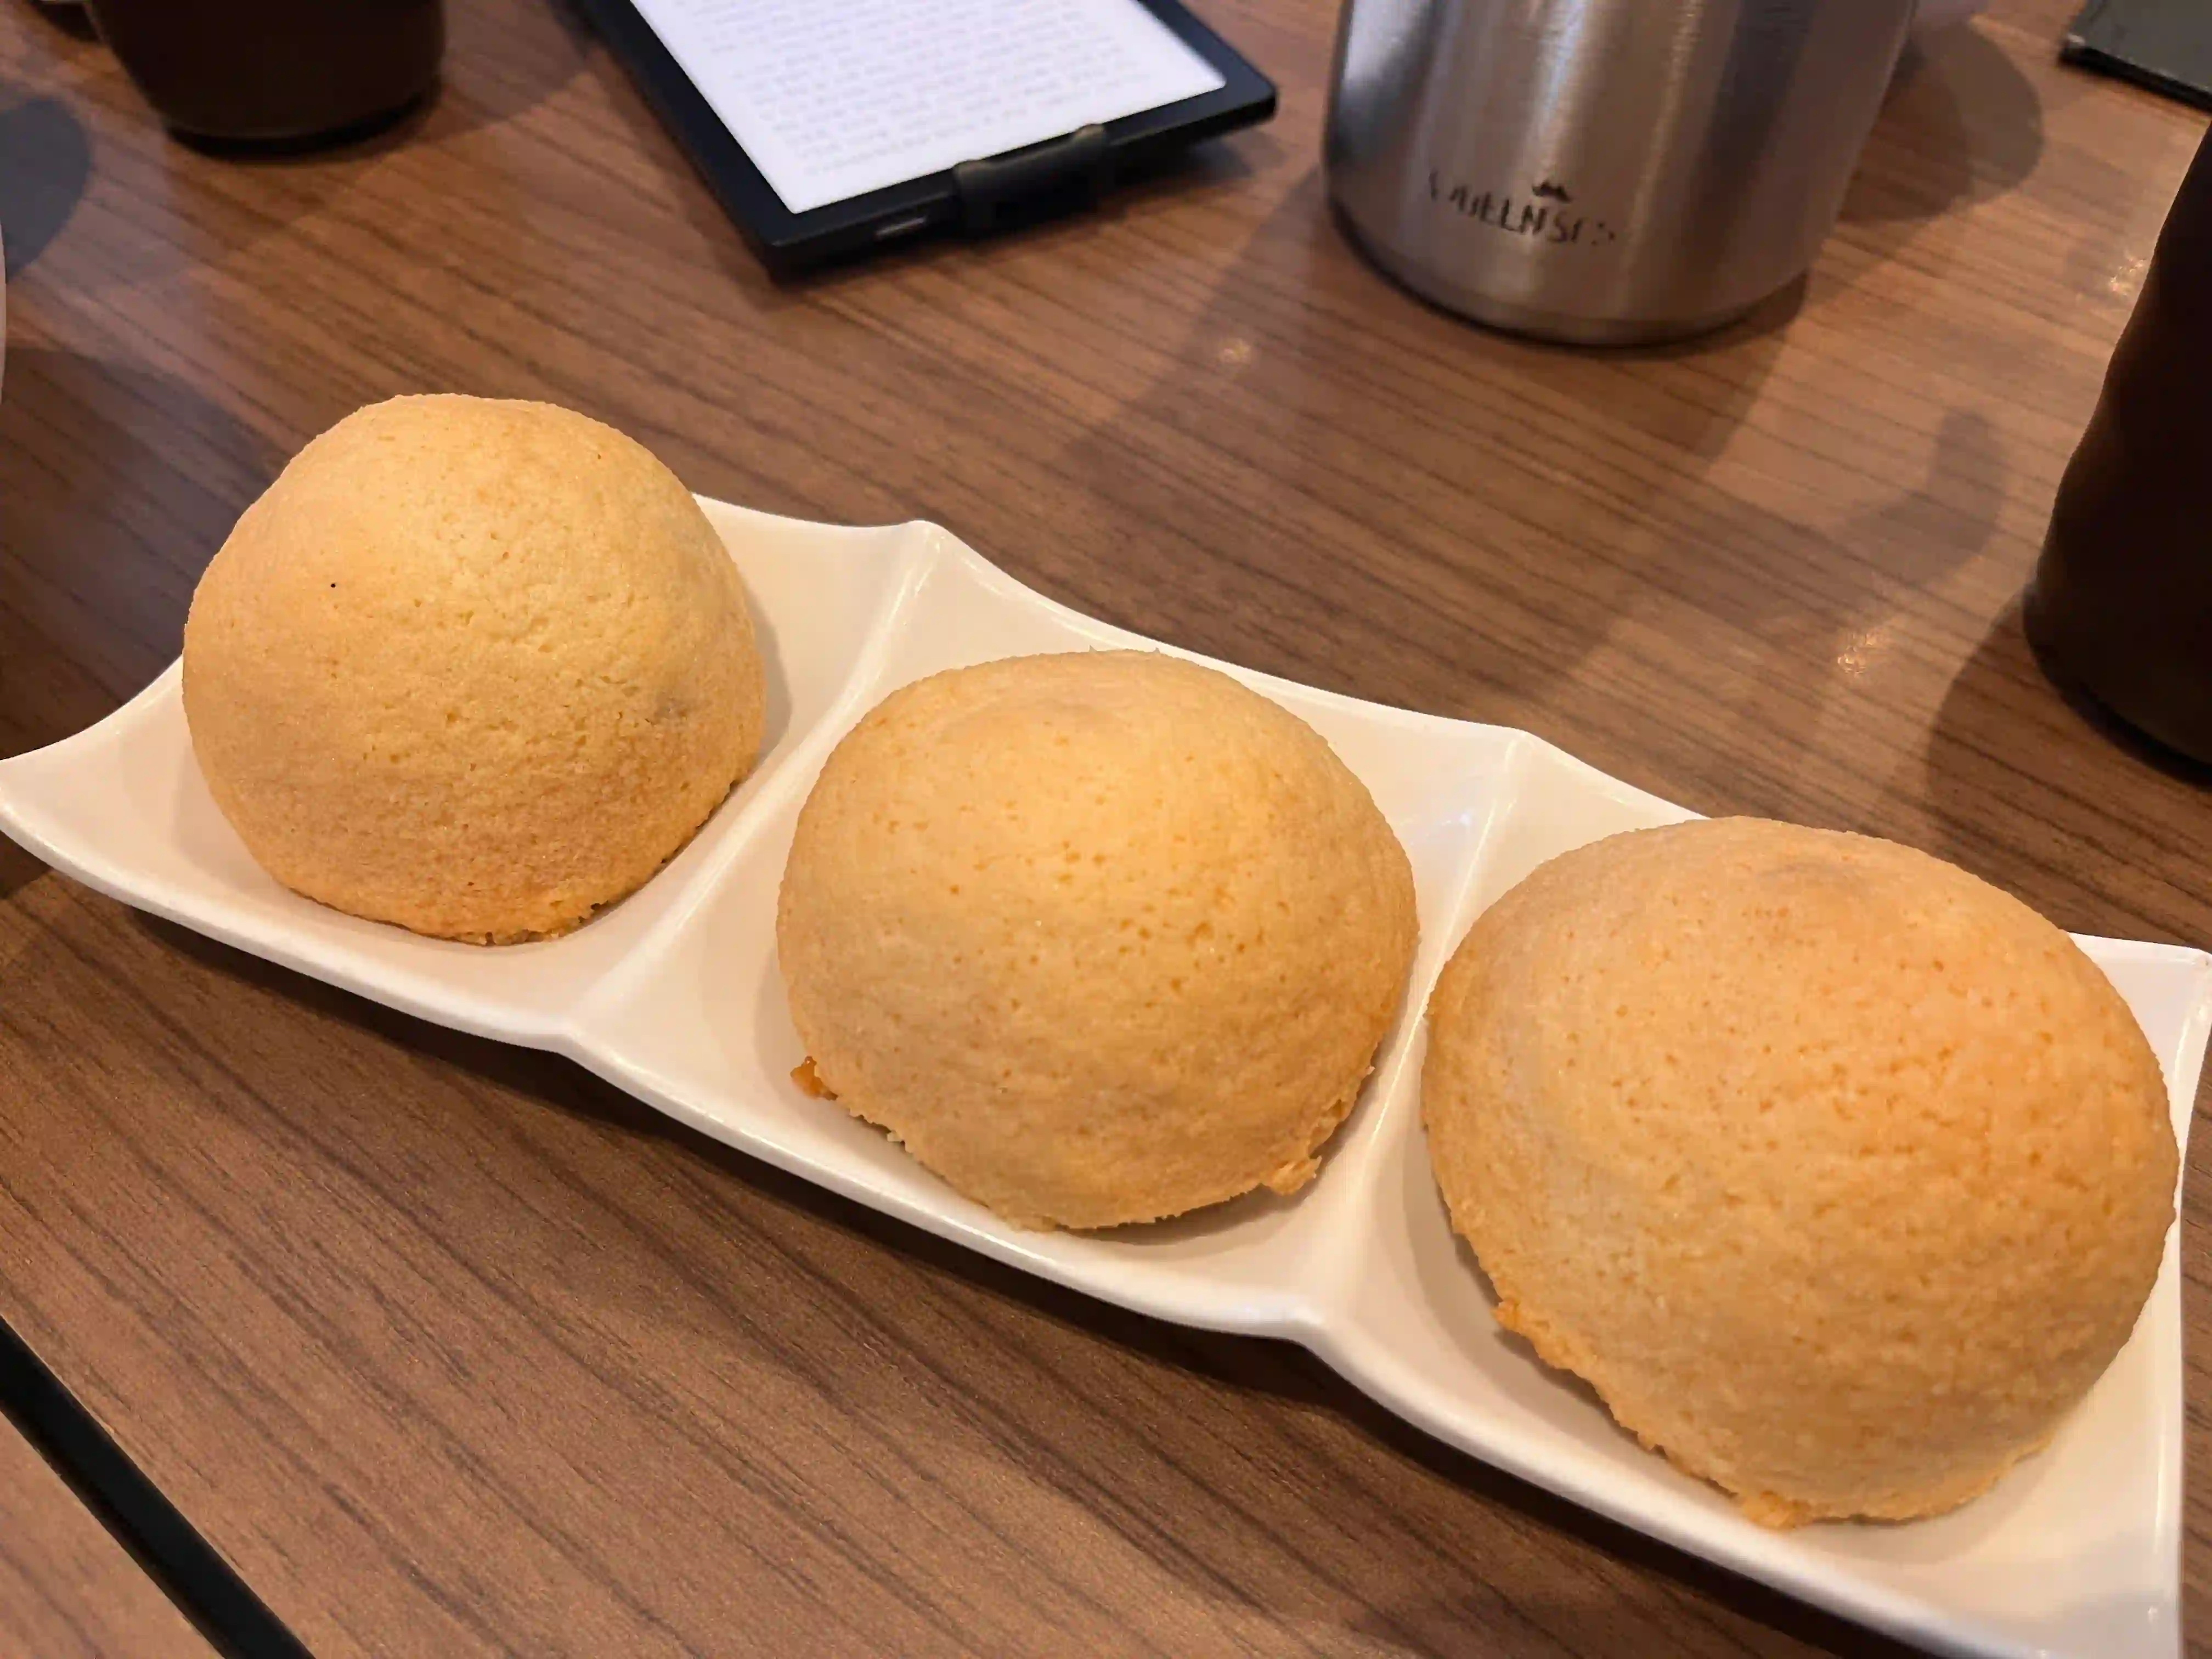 빵이 접시 위에 담긴 사진 